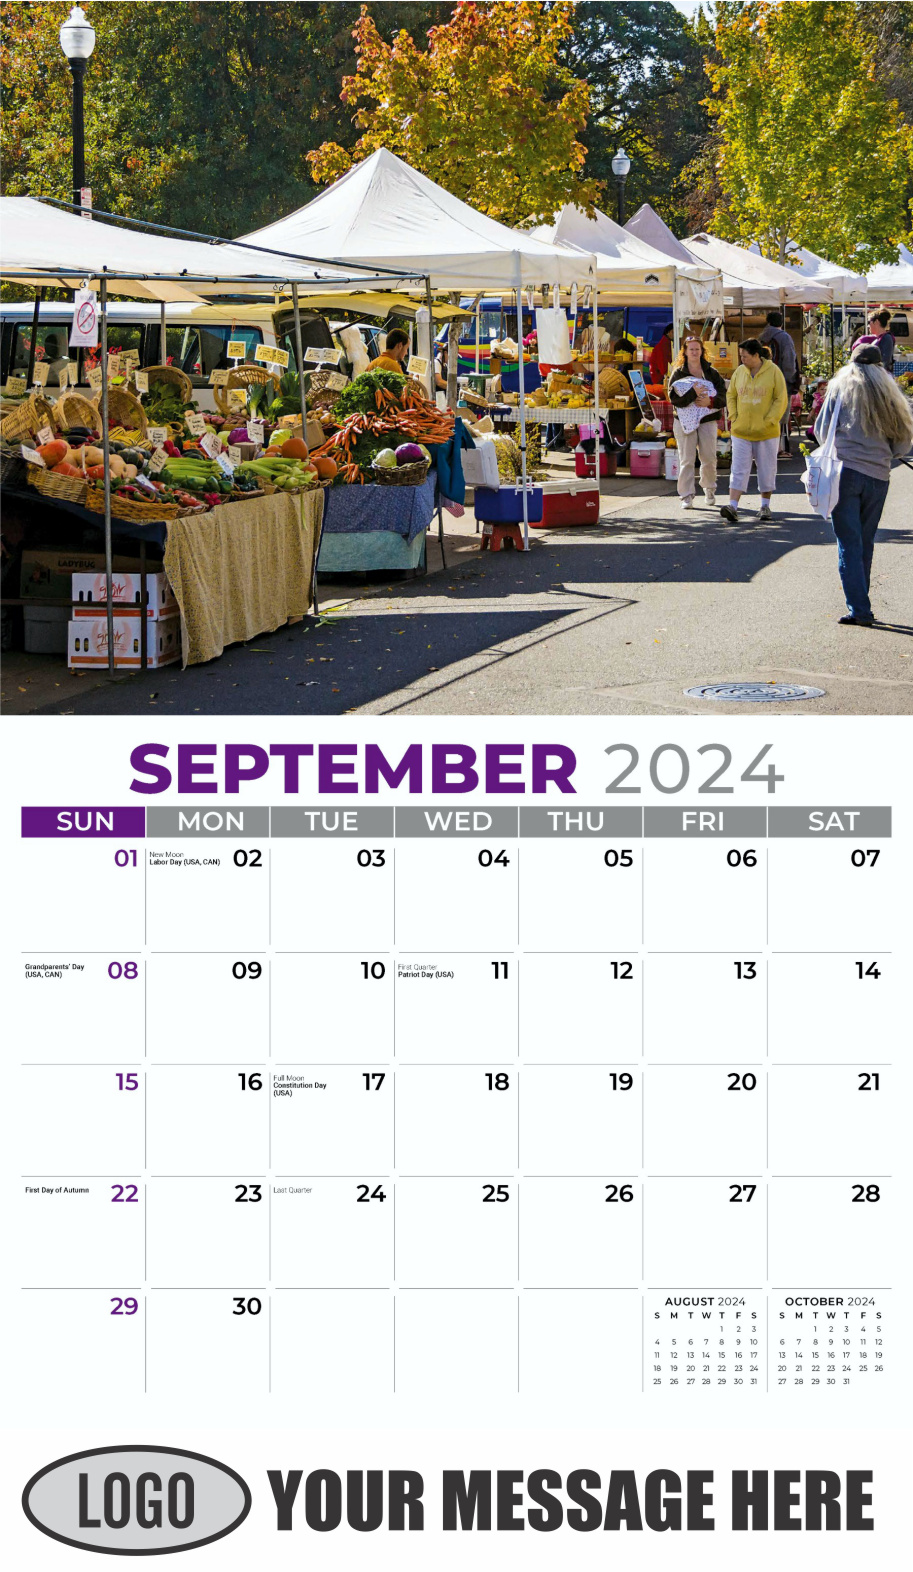 Country Spirit 2024 Business Advertising Calendar - September